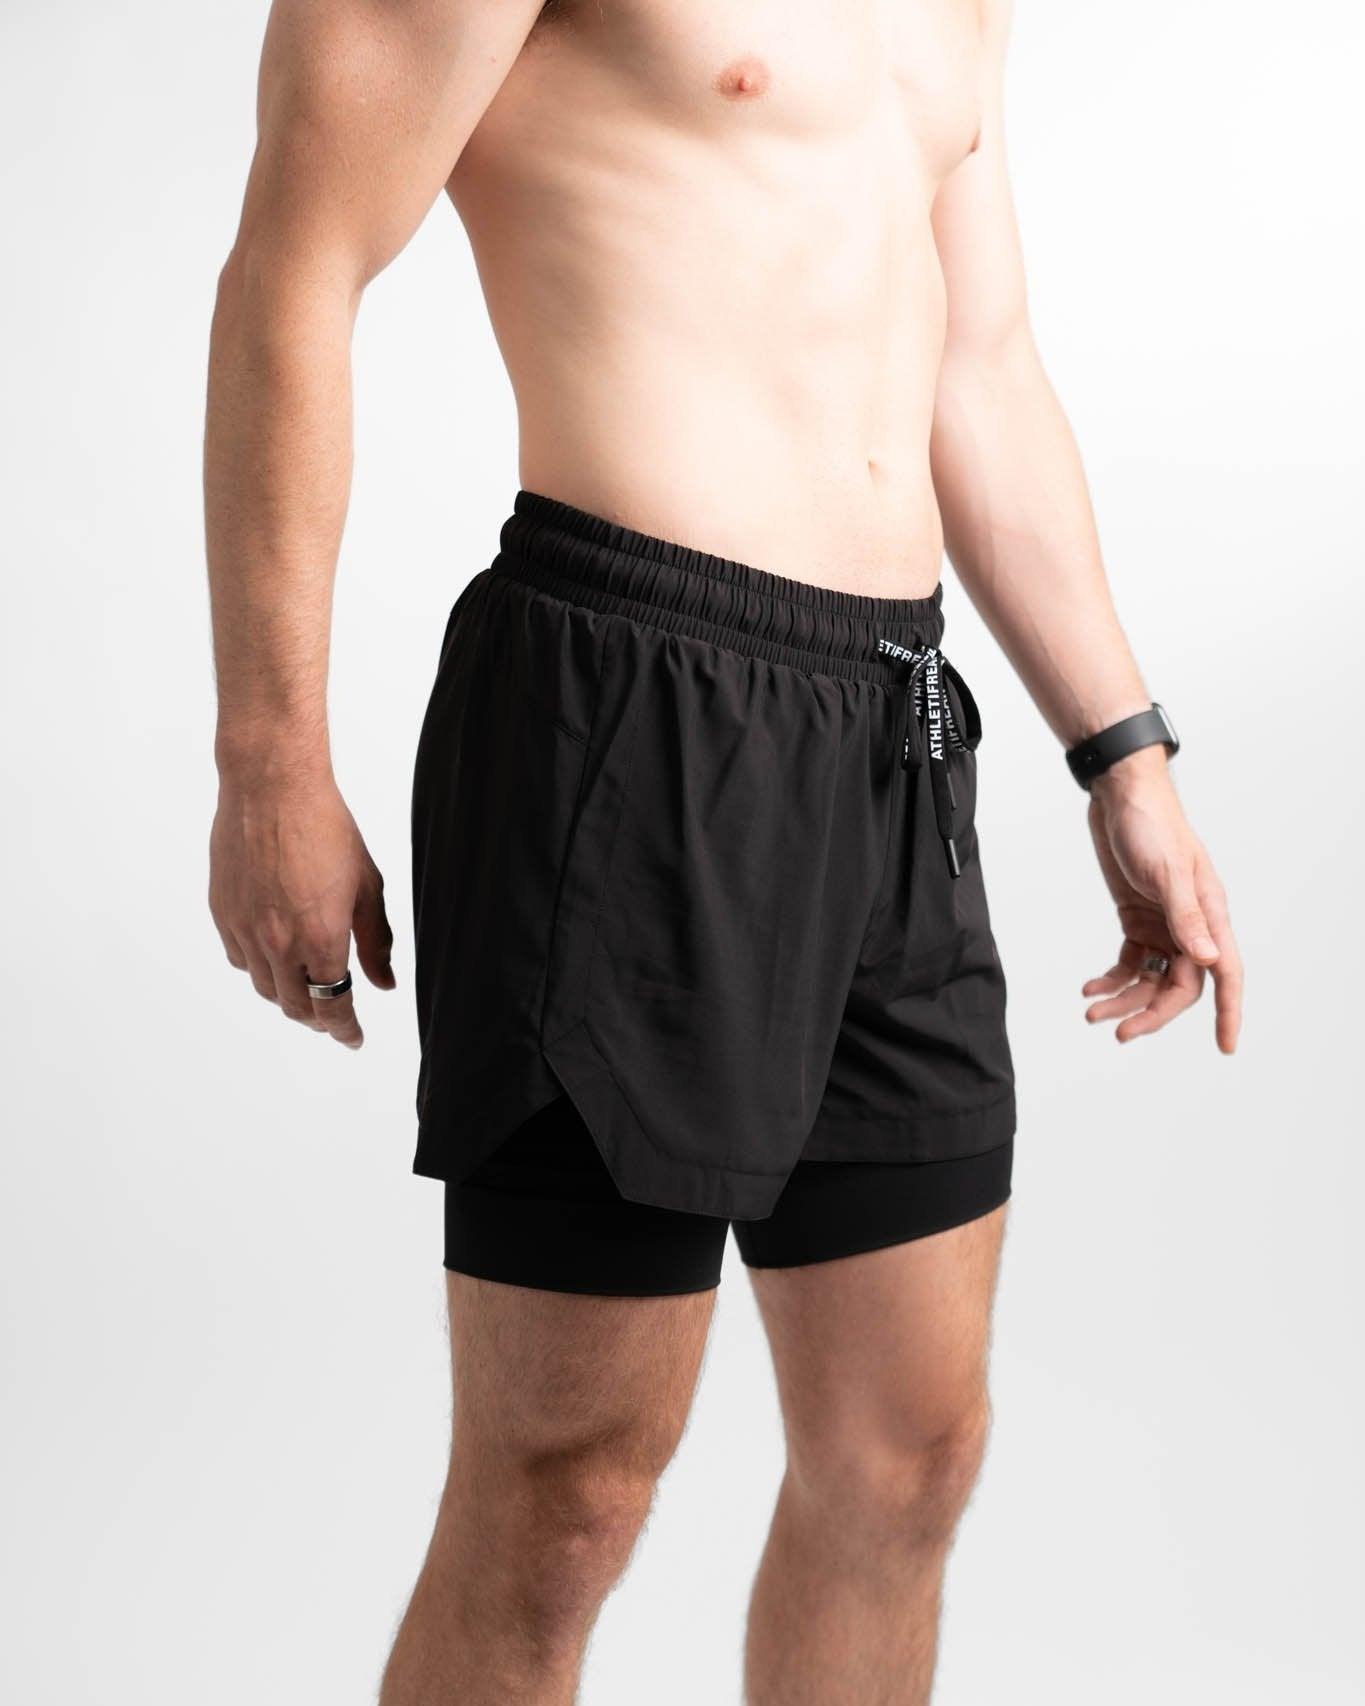 CORE] Training - Athletifreak Shorts 6